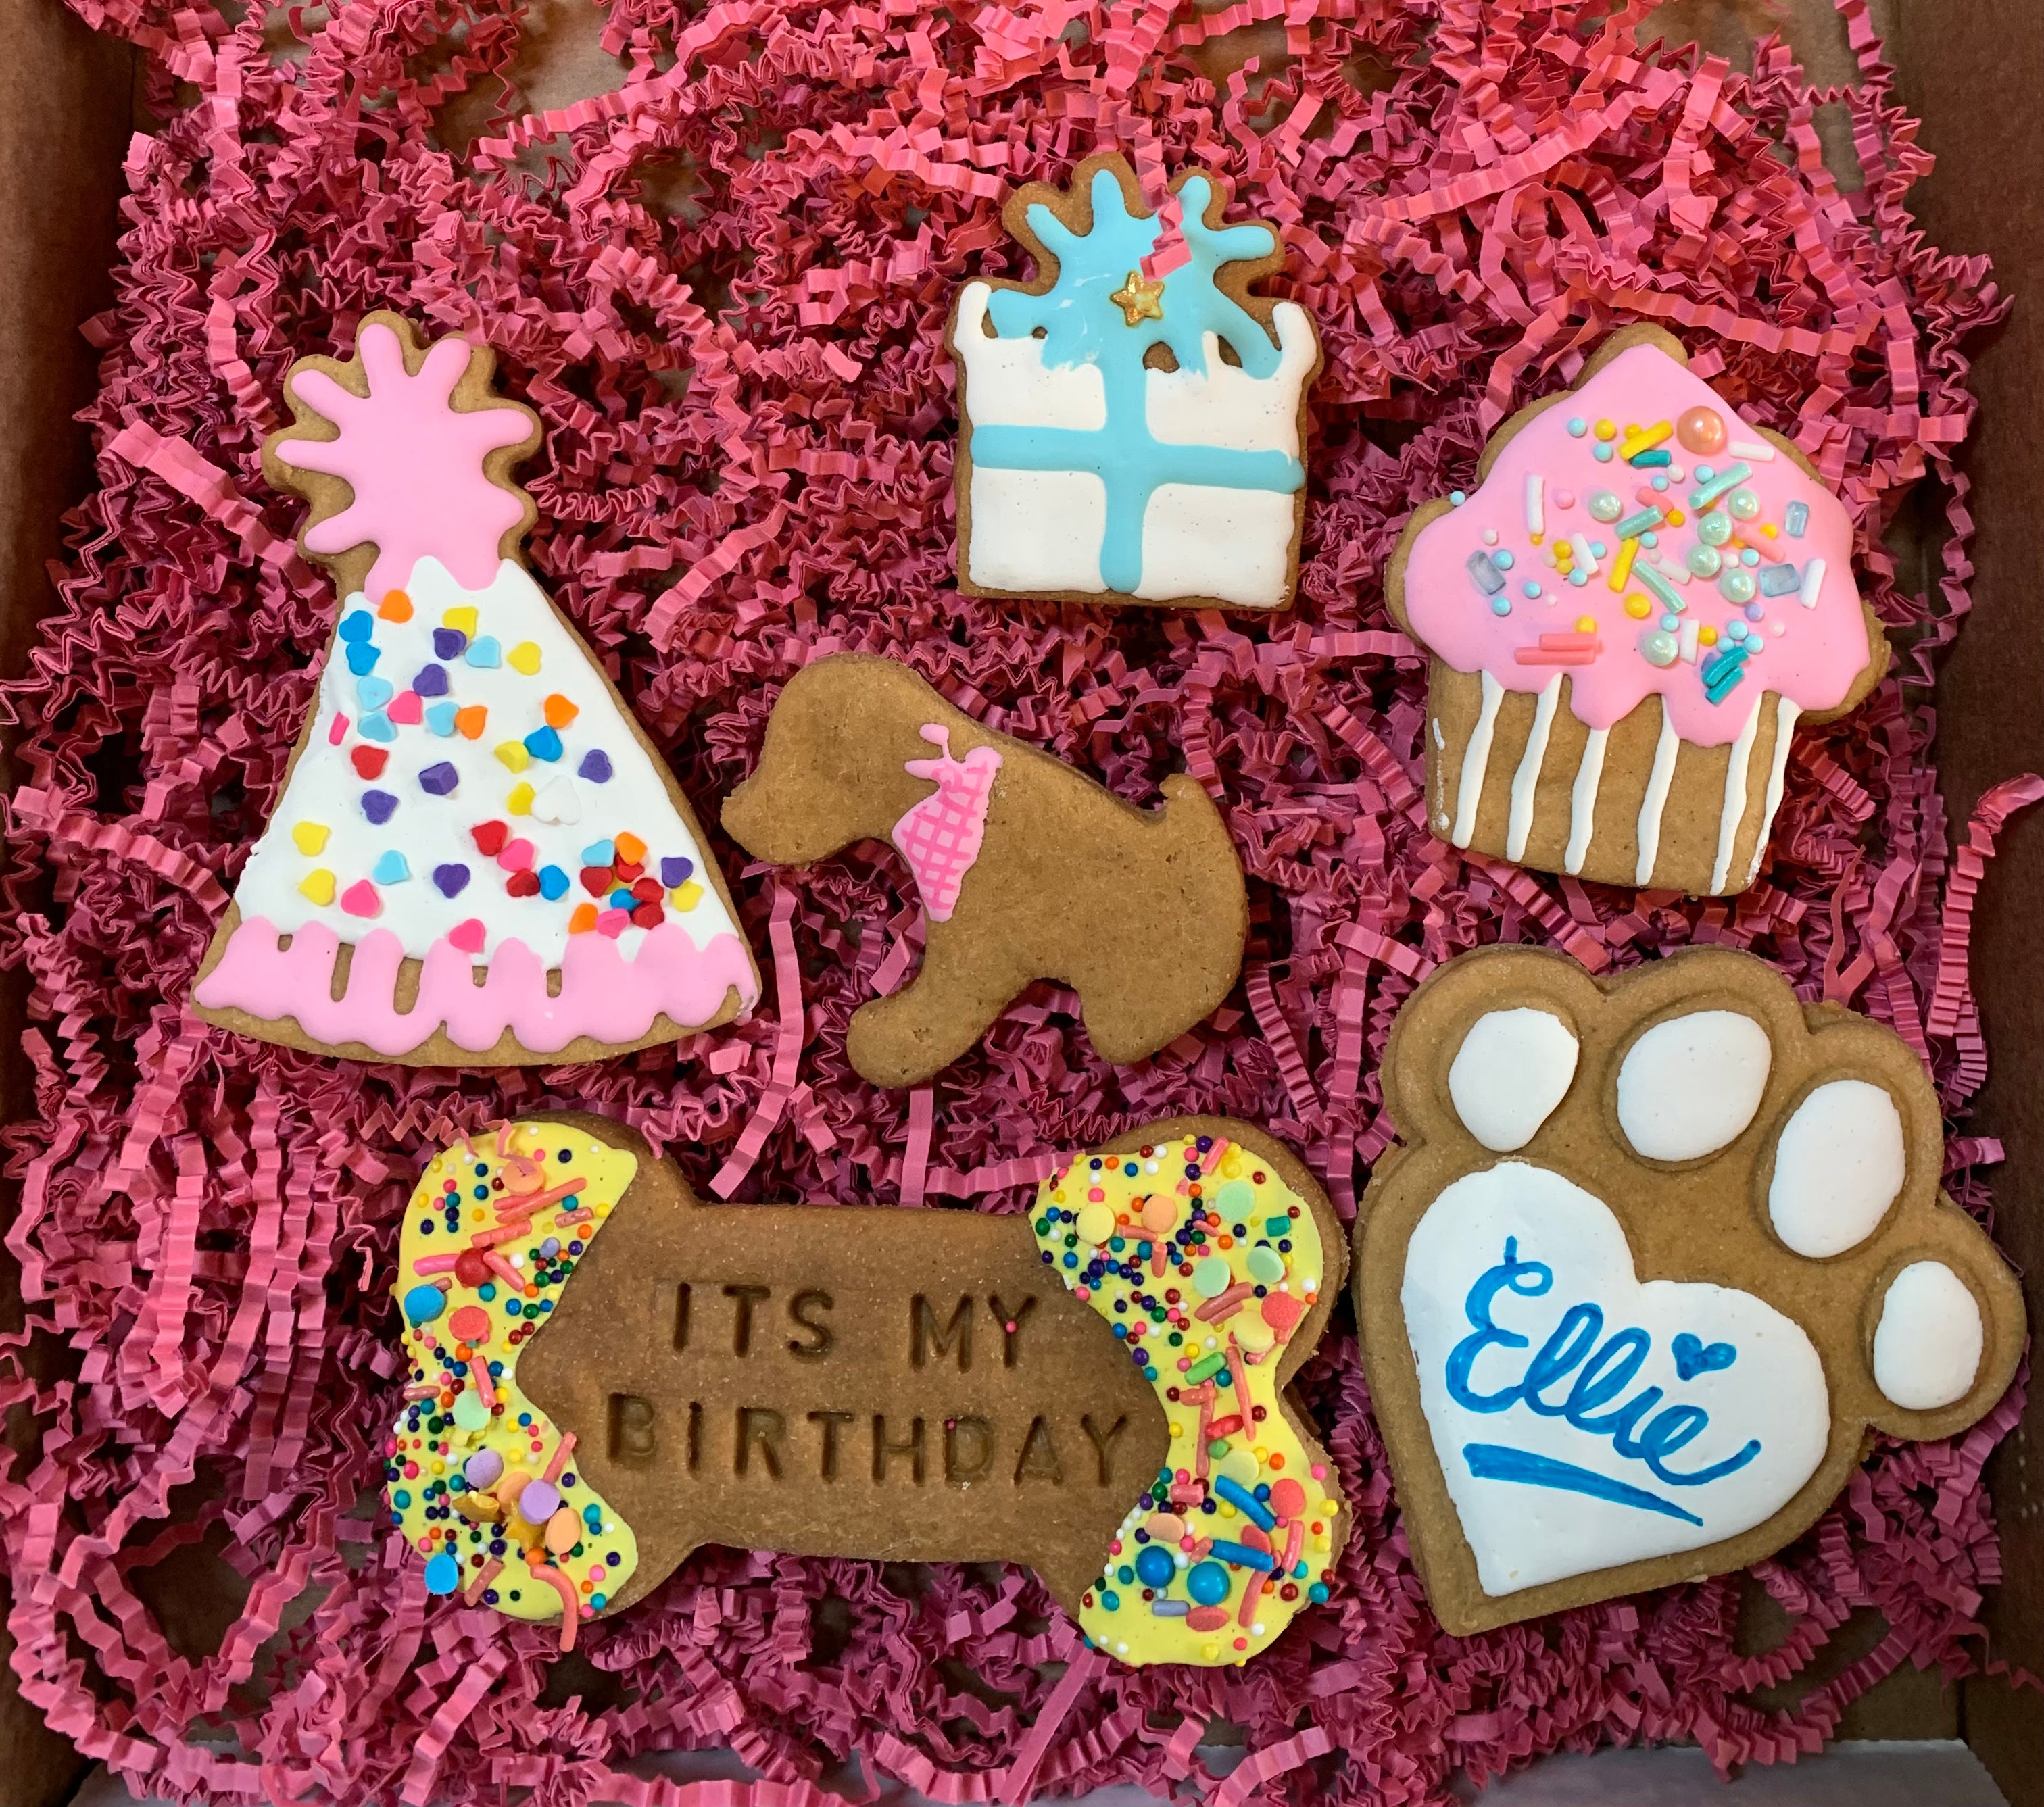 Animal Connection's Birthday Bakery Treats Box